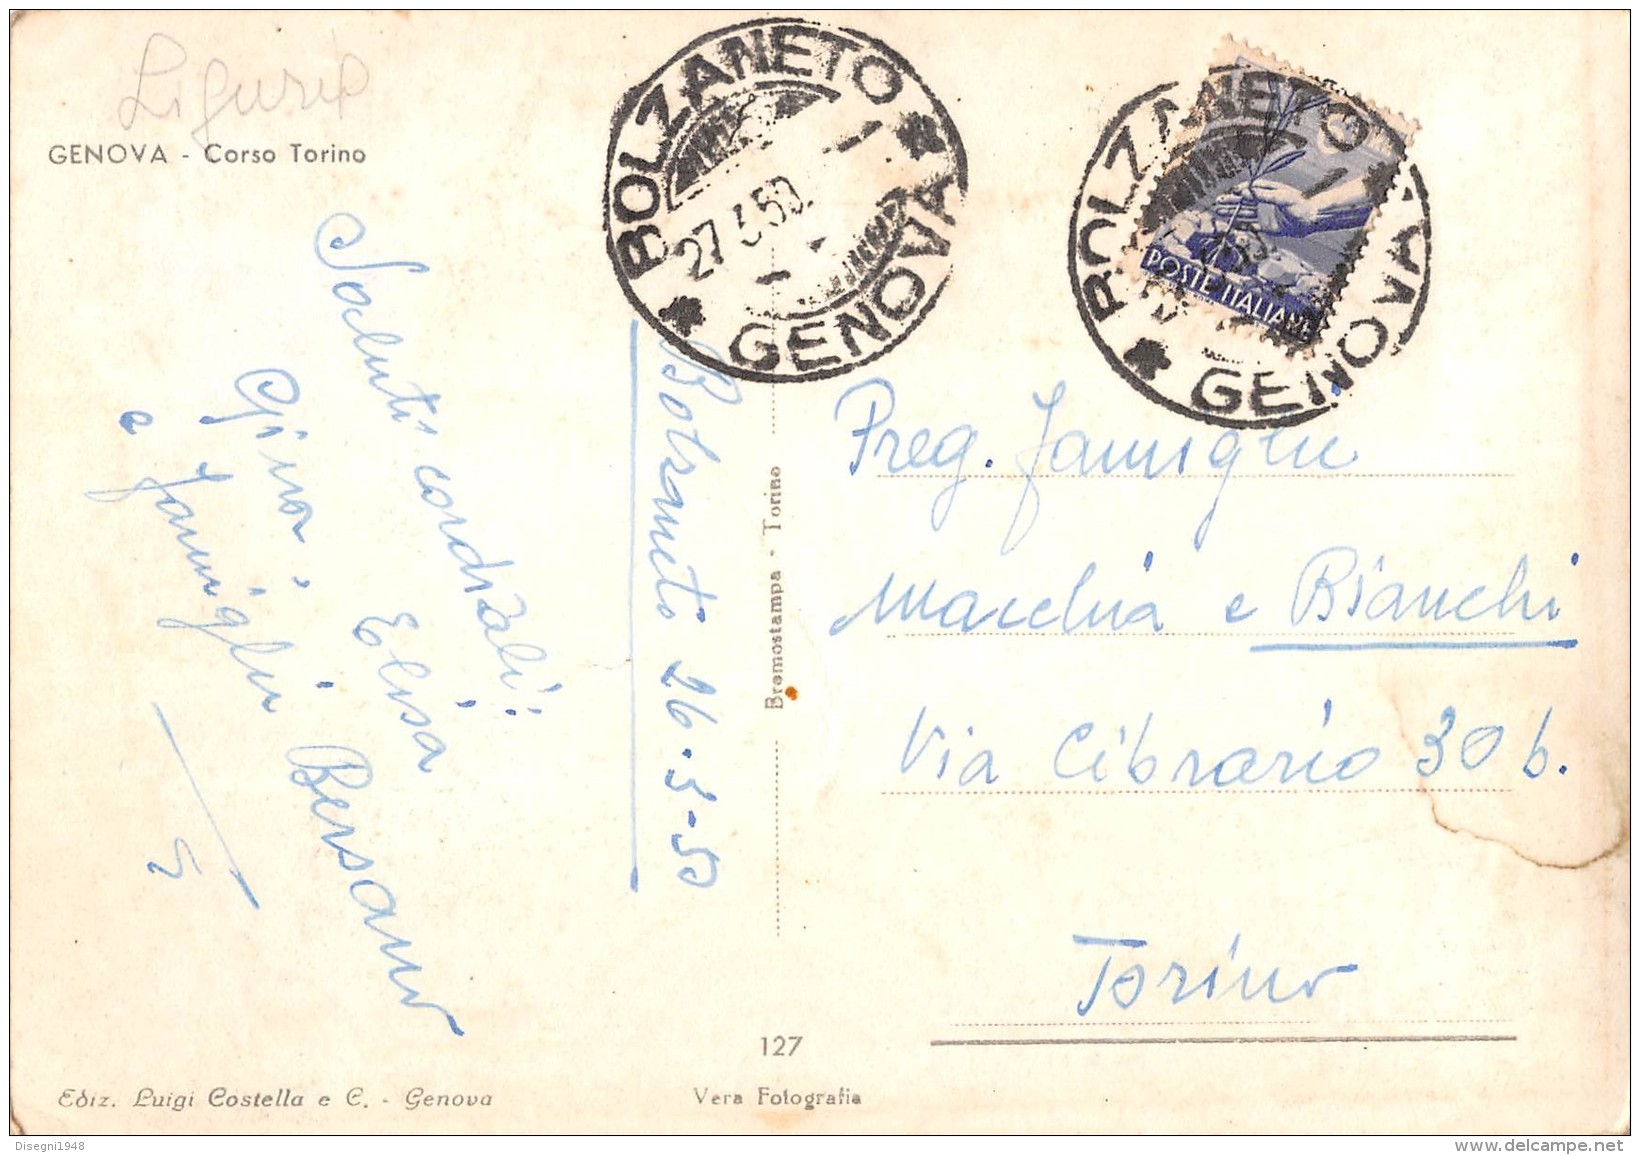 06377 "GENOVA - CORSO TORINO" ANIMATA, TRAMWAY.  CART. ILL. ORIG. SPEDITA 1950 - Genova (Genoa)